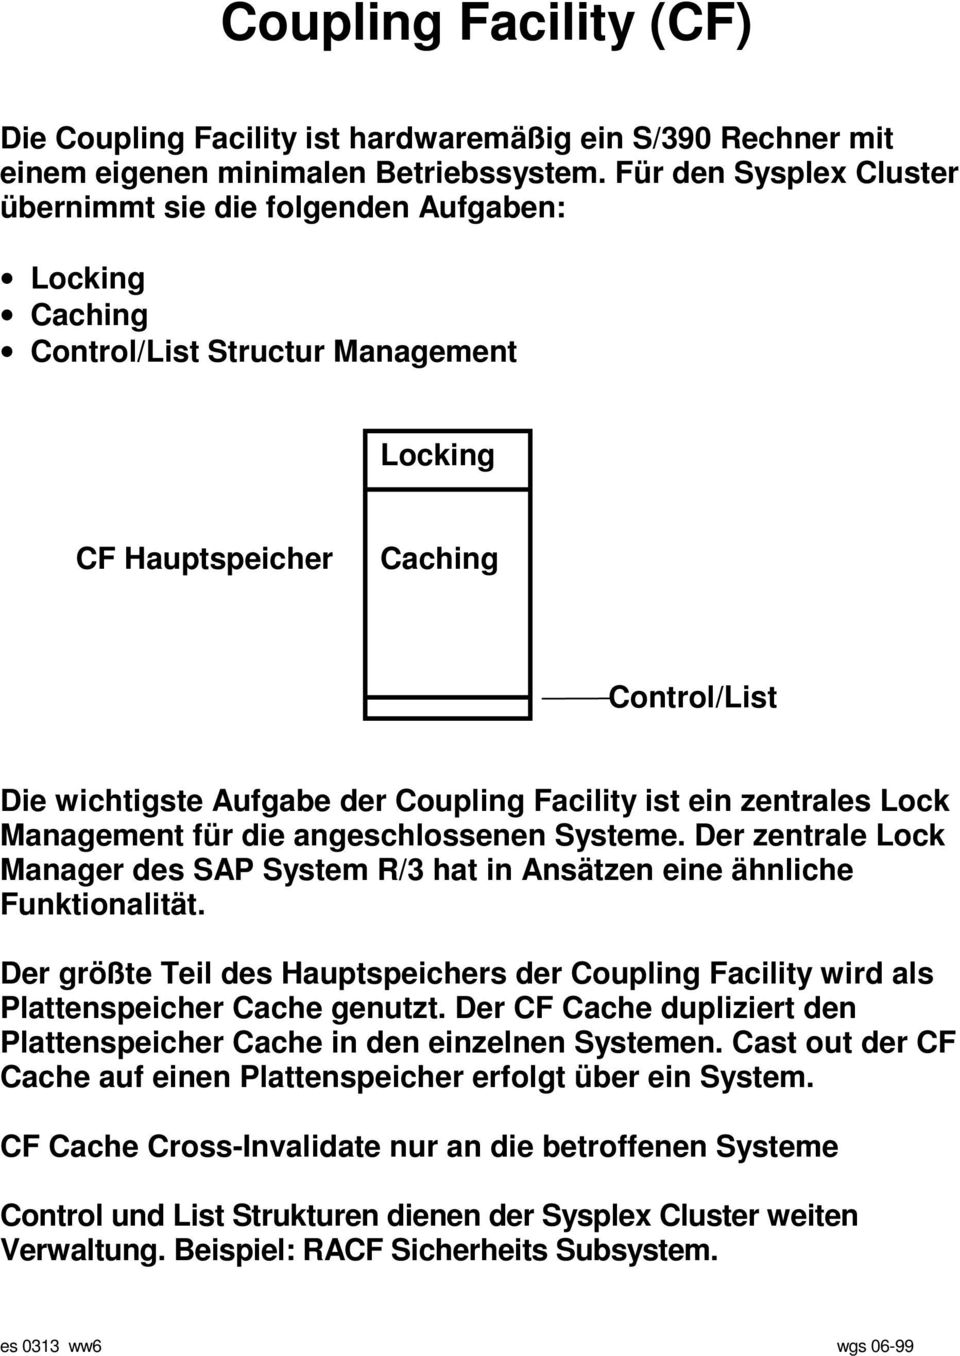 Facility ist ein zentrales Lock Management für die angeschlossenen Systeme. Der zentrale Lock Manager des SAP System R/3 hat in Ansätzen eine ähnliche Funktionalität.